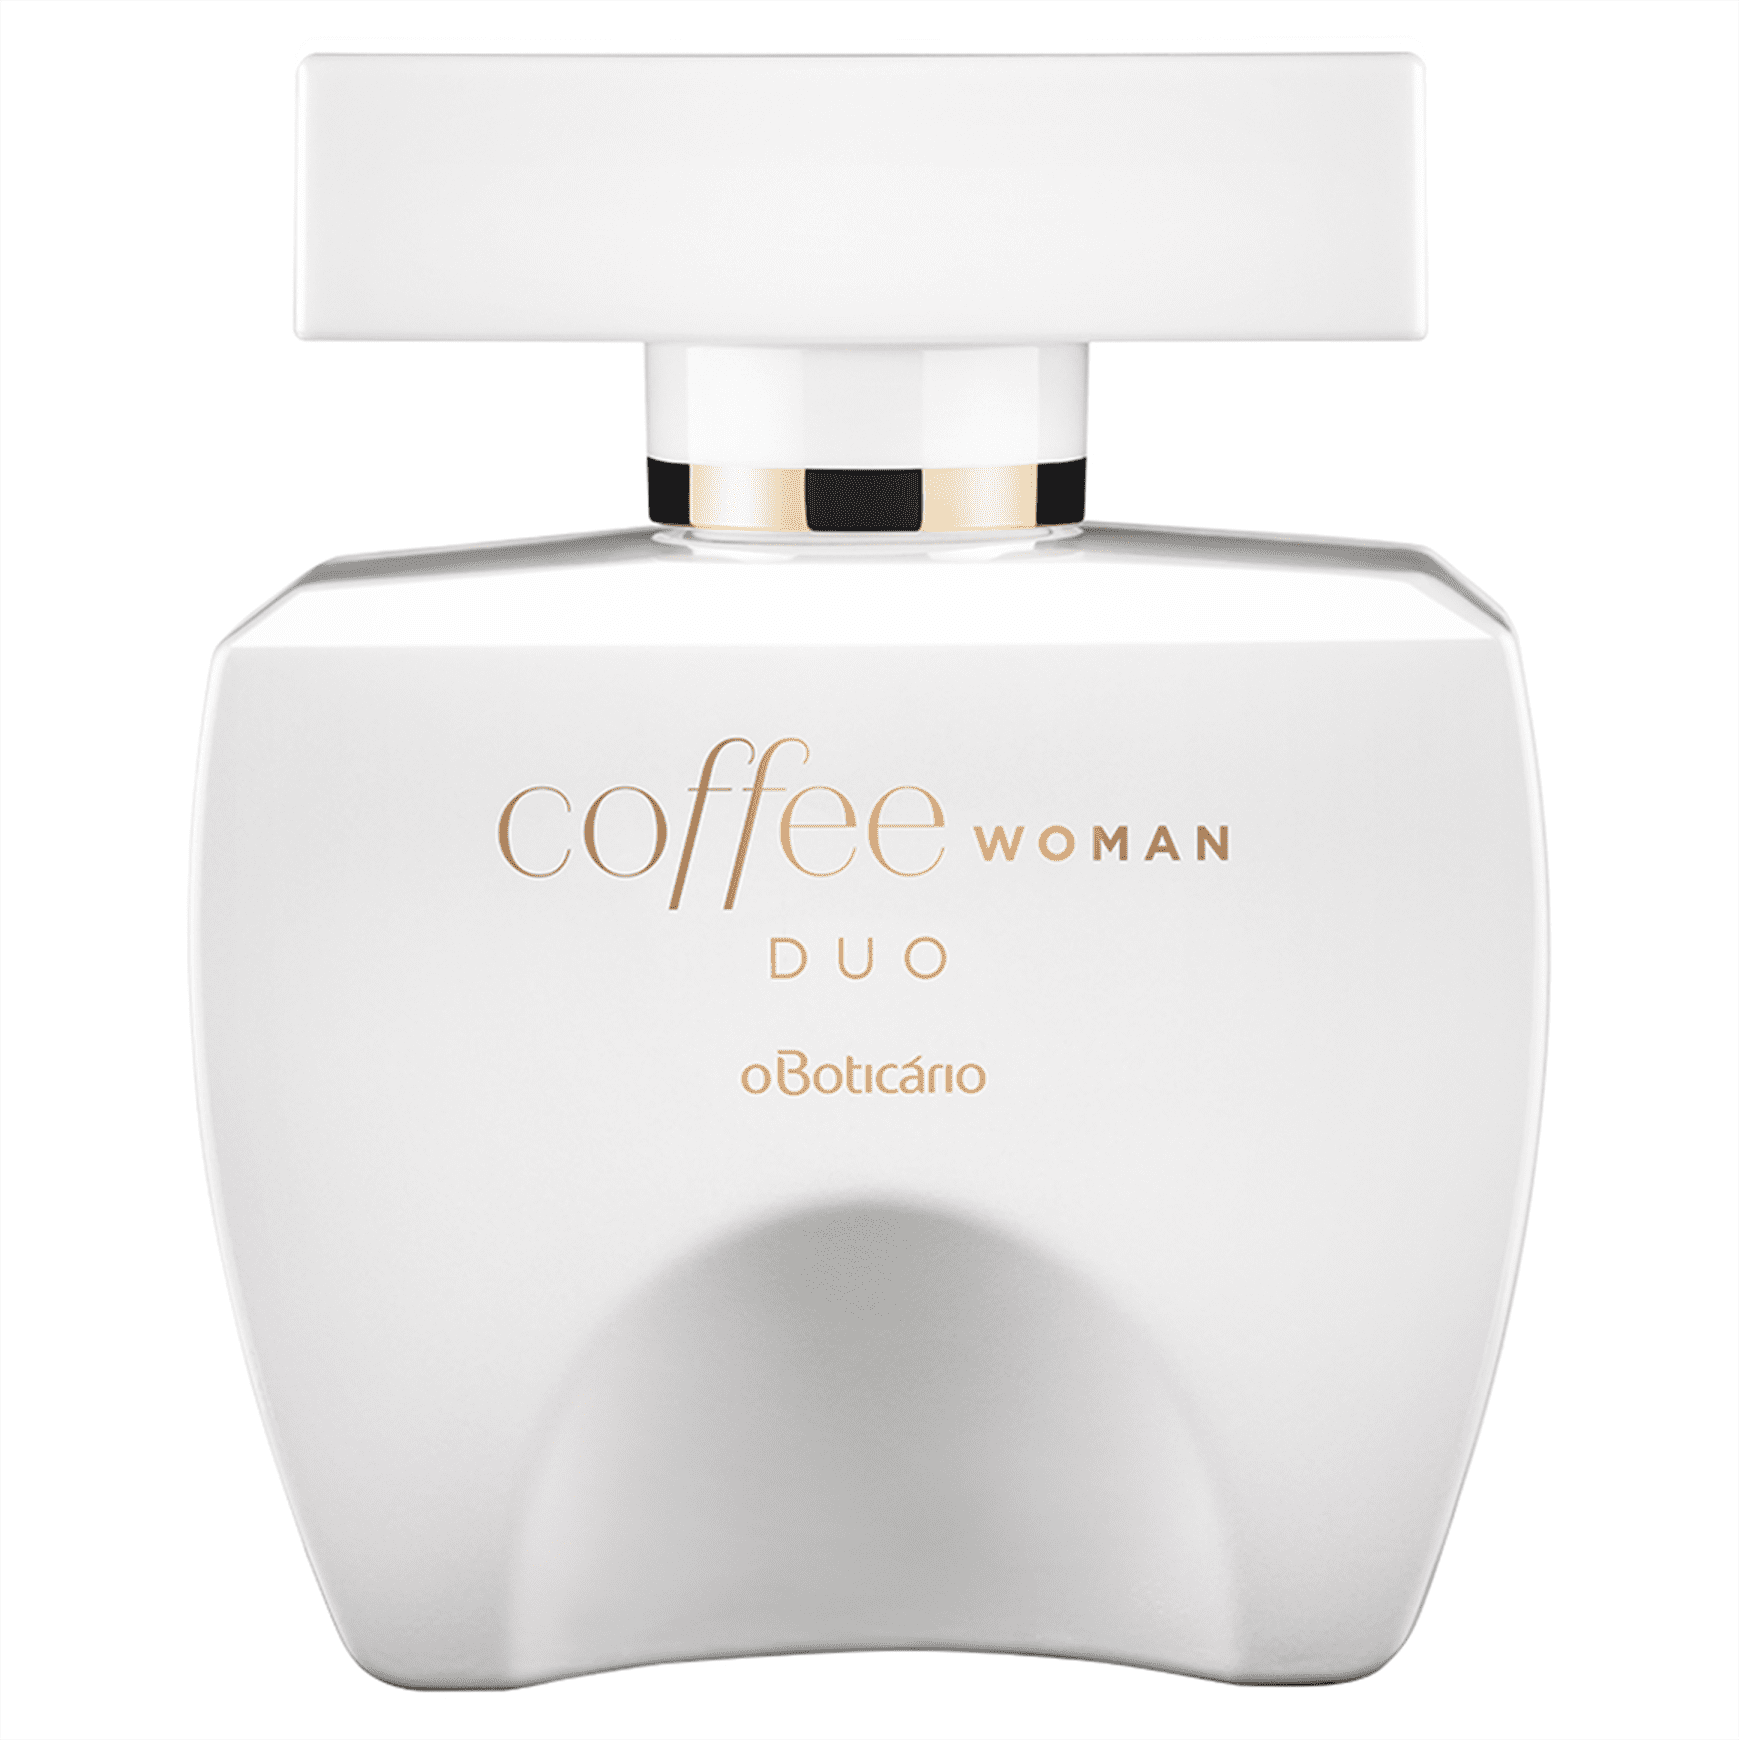 Coffee woman duo desodorante colônia vegano 73613 oferta na O Boticário